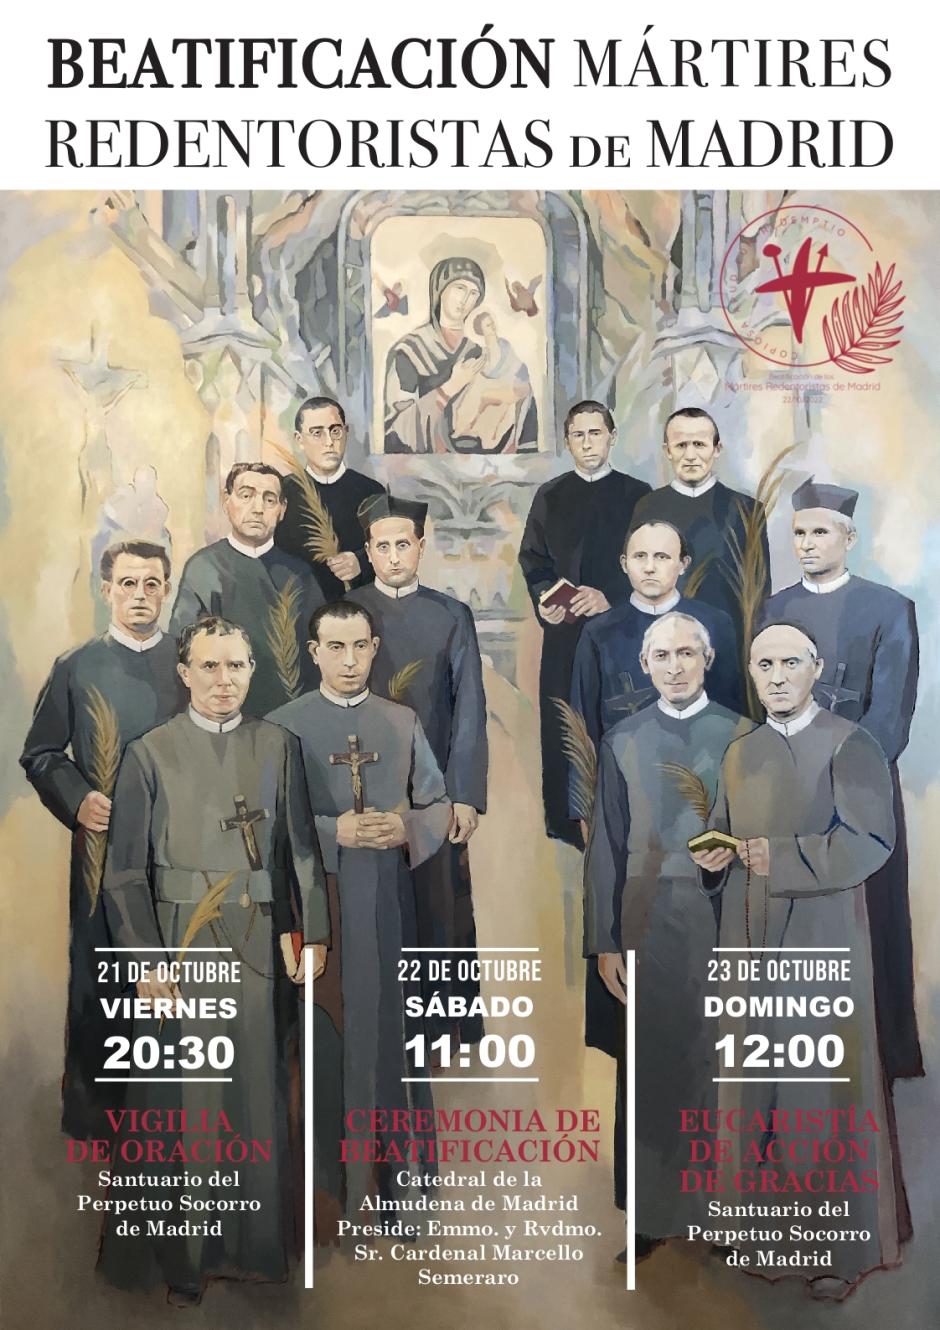 Del 21 al 23 de diciembre se celebrarán tres actos con motivo de la beatificación de los12 misioneros redentoristas